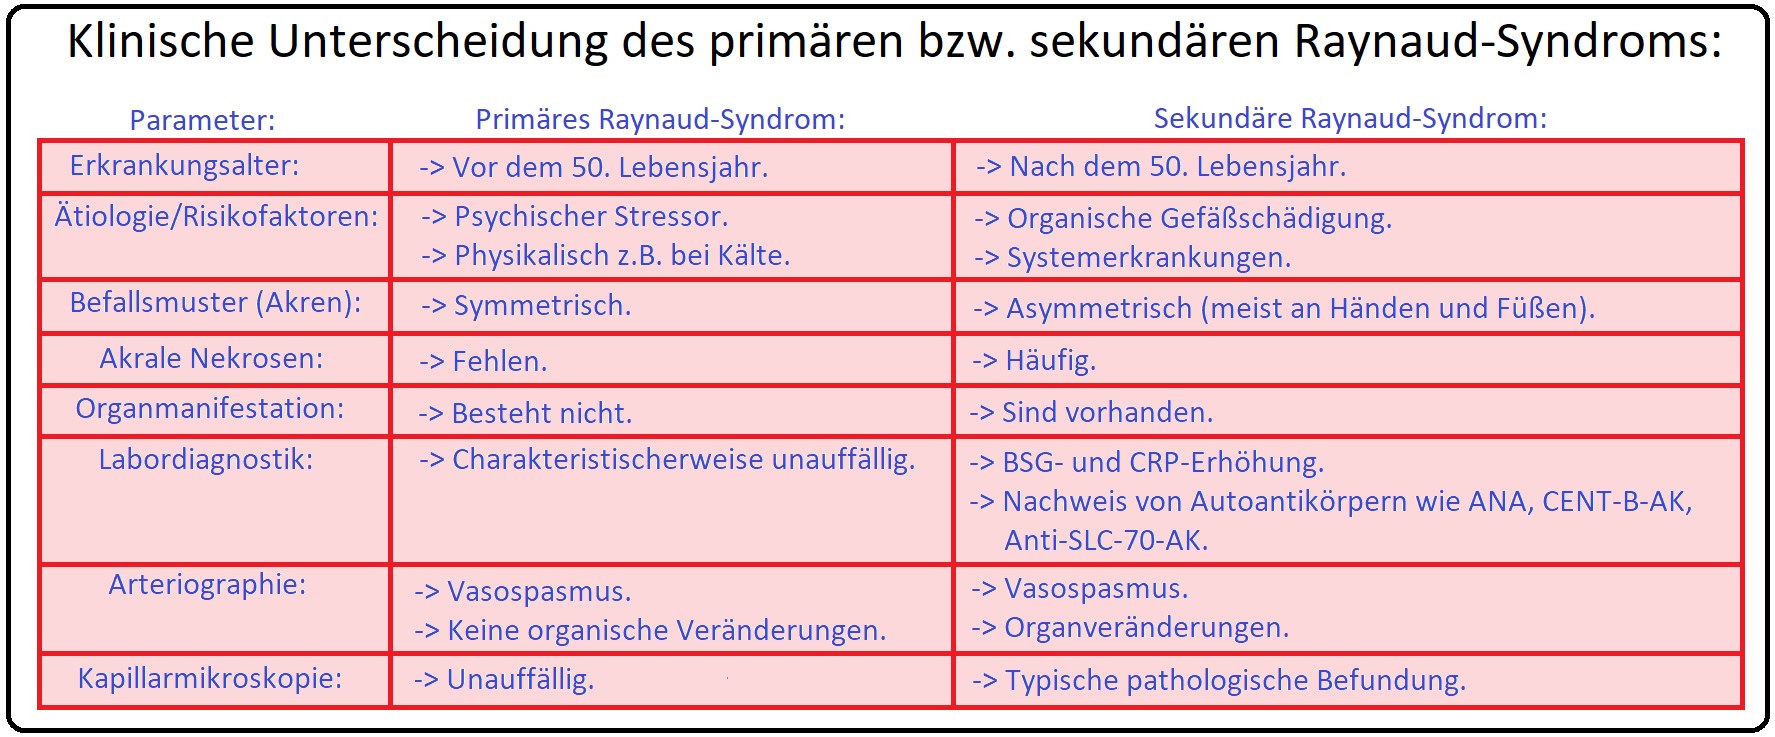 736 Klinische Unterscheidung des primären bzw. sekundären Raynaud Syndroms